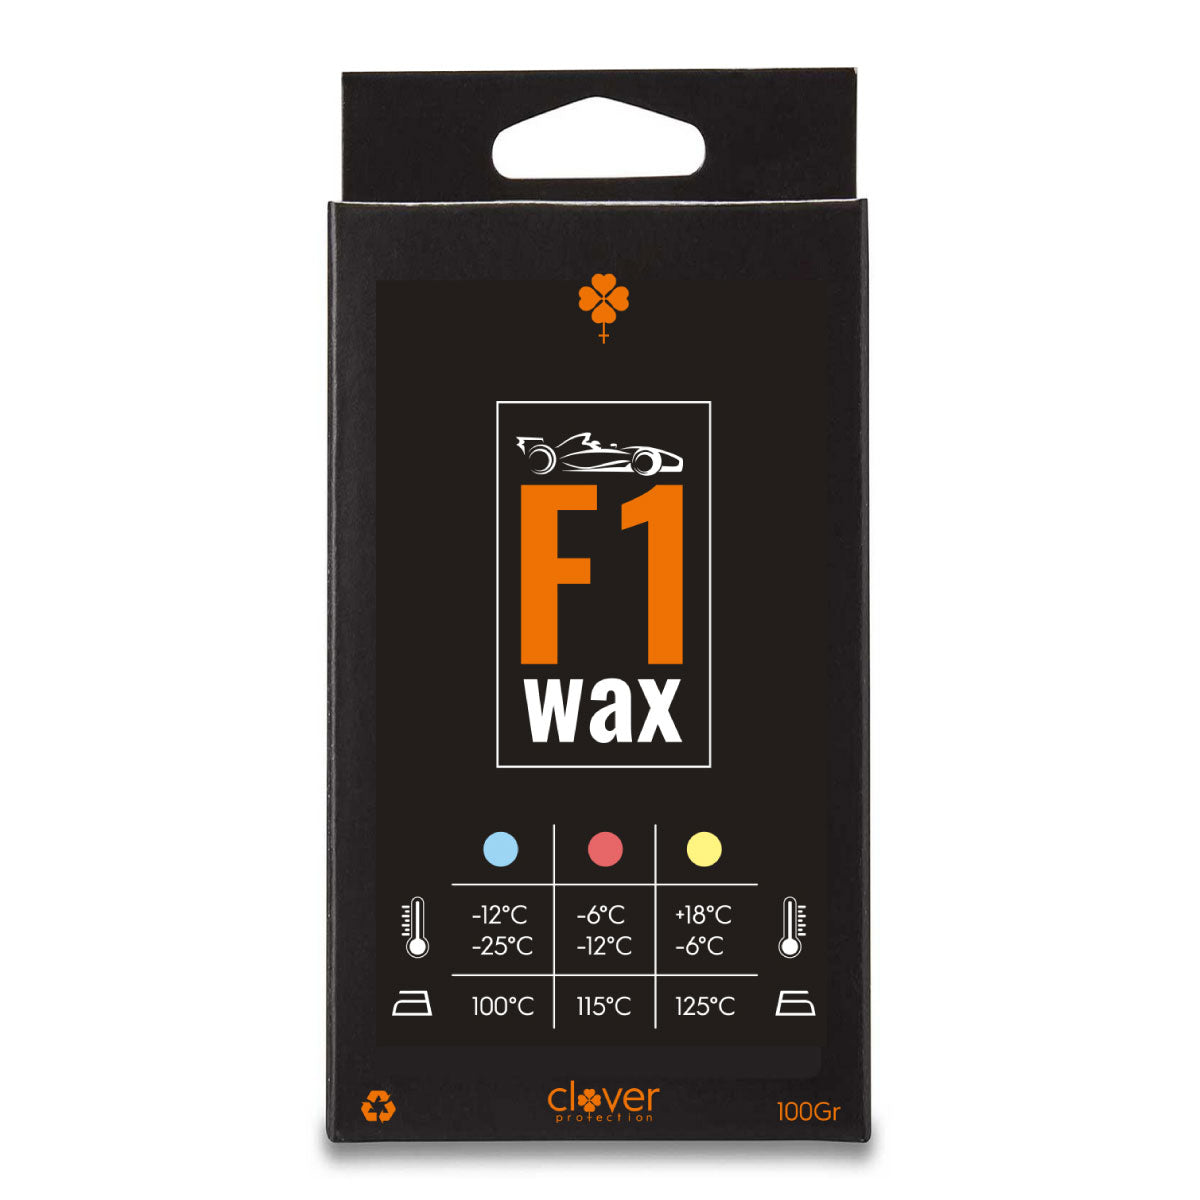 F1 Wax - PRE ORDER